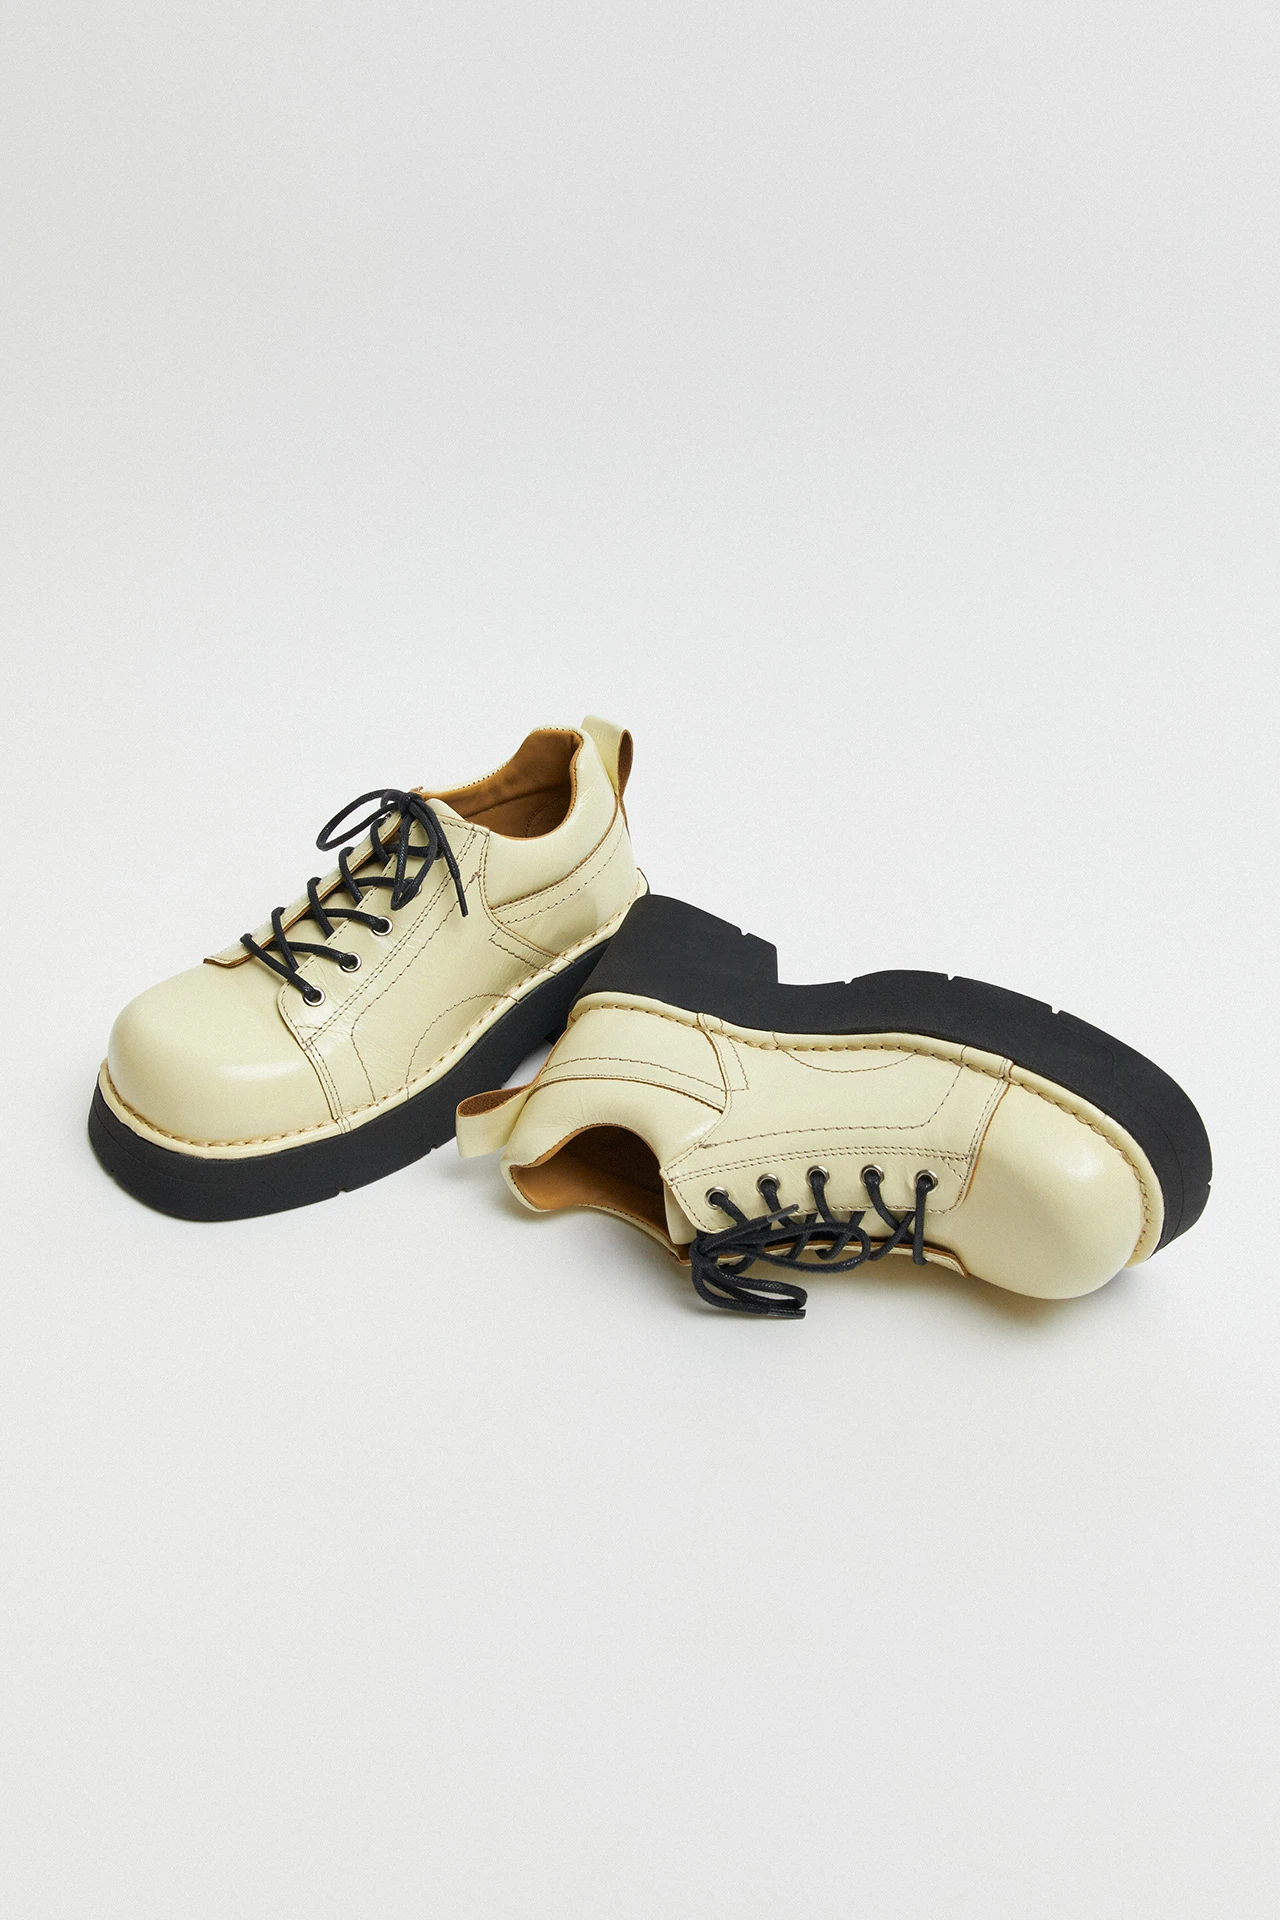 Miista-Erina-Cream-Boots-02